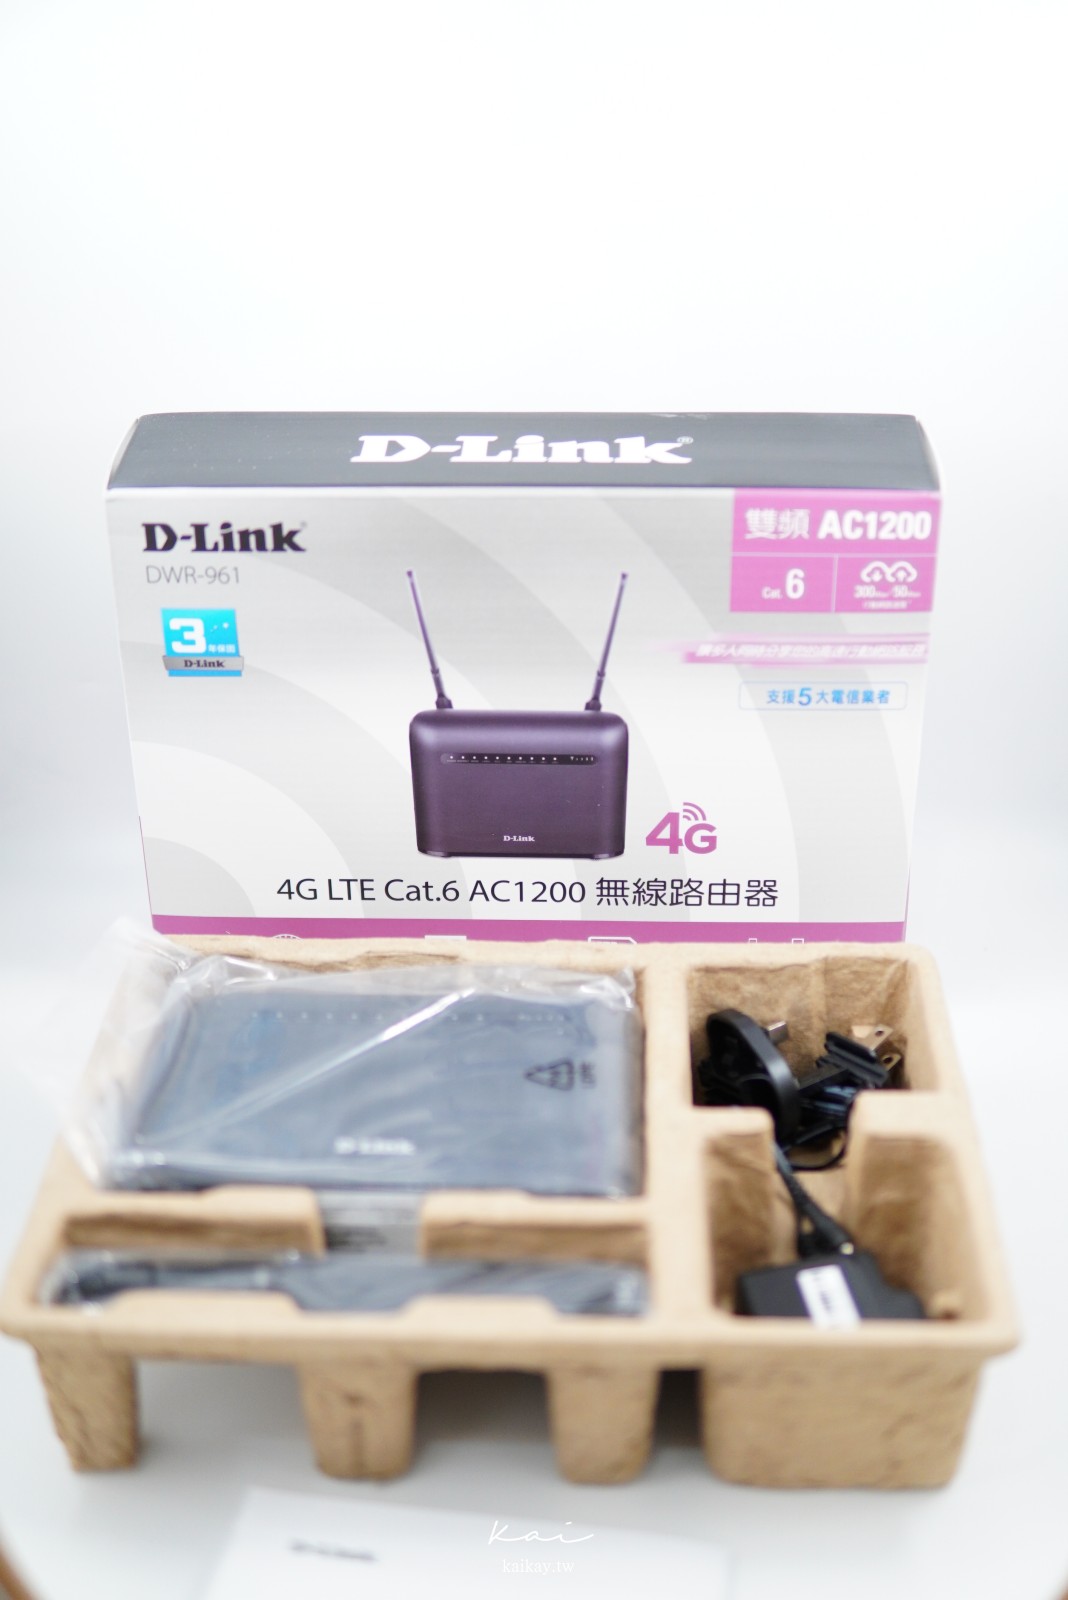 ☆【3C】世界末日救星。D-Link DWR-961 4G LTE Cat. 6 AC1200無線路由器（開箱、測速、設定步驟）